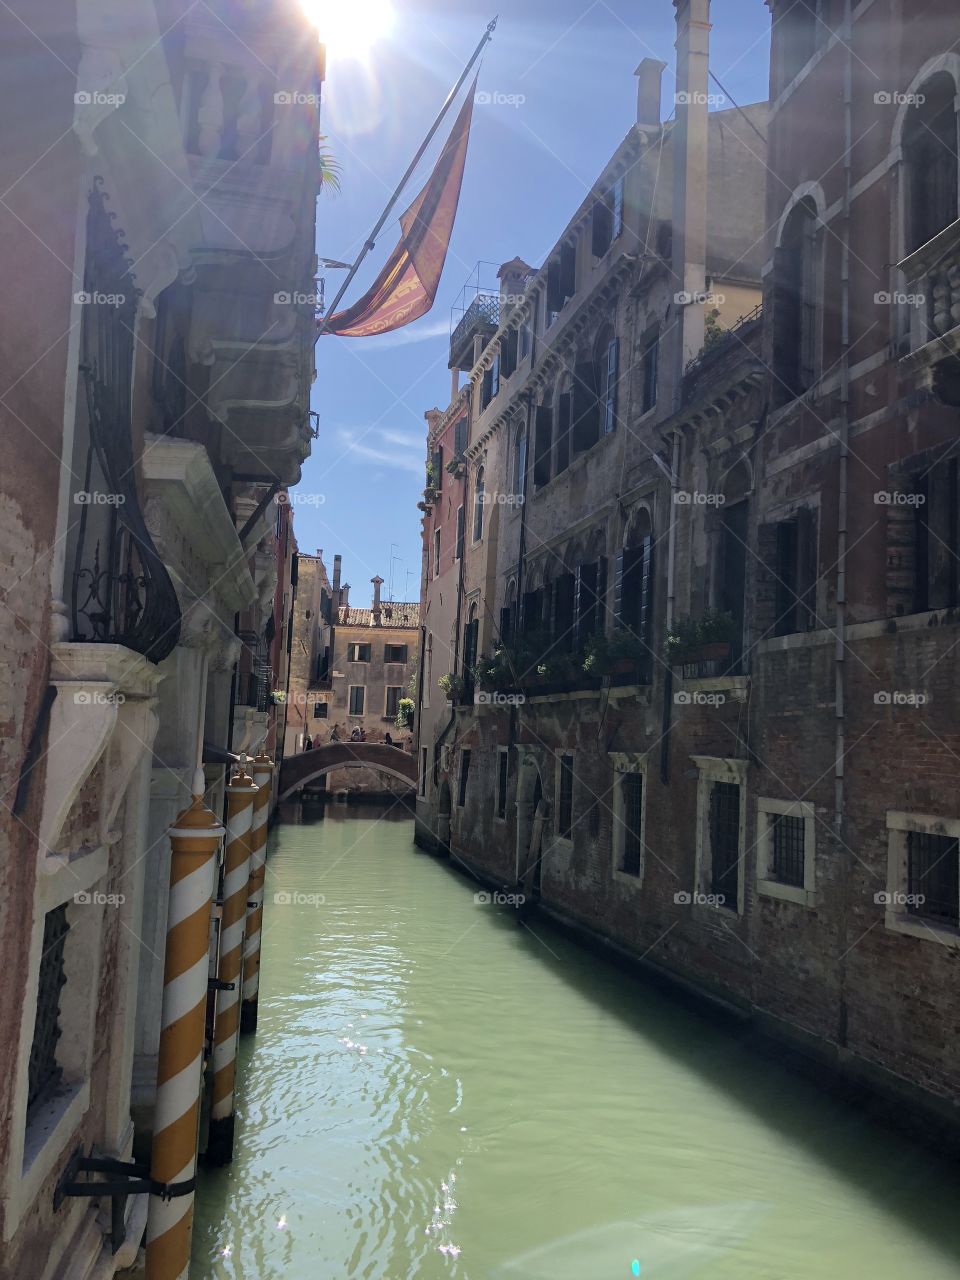 Venice river in October 2018